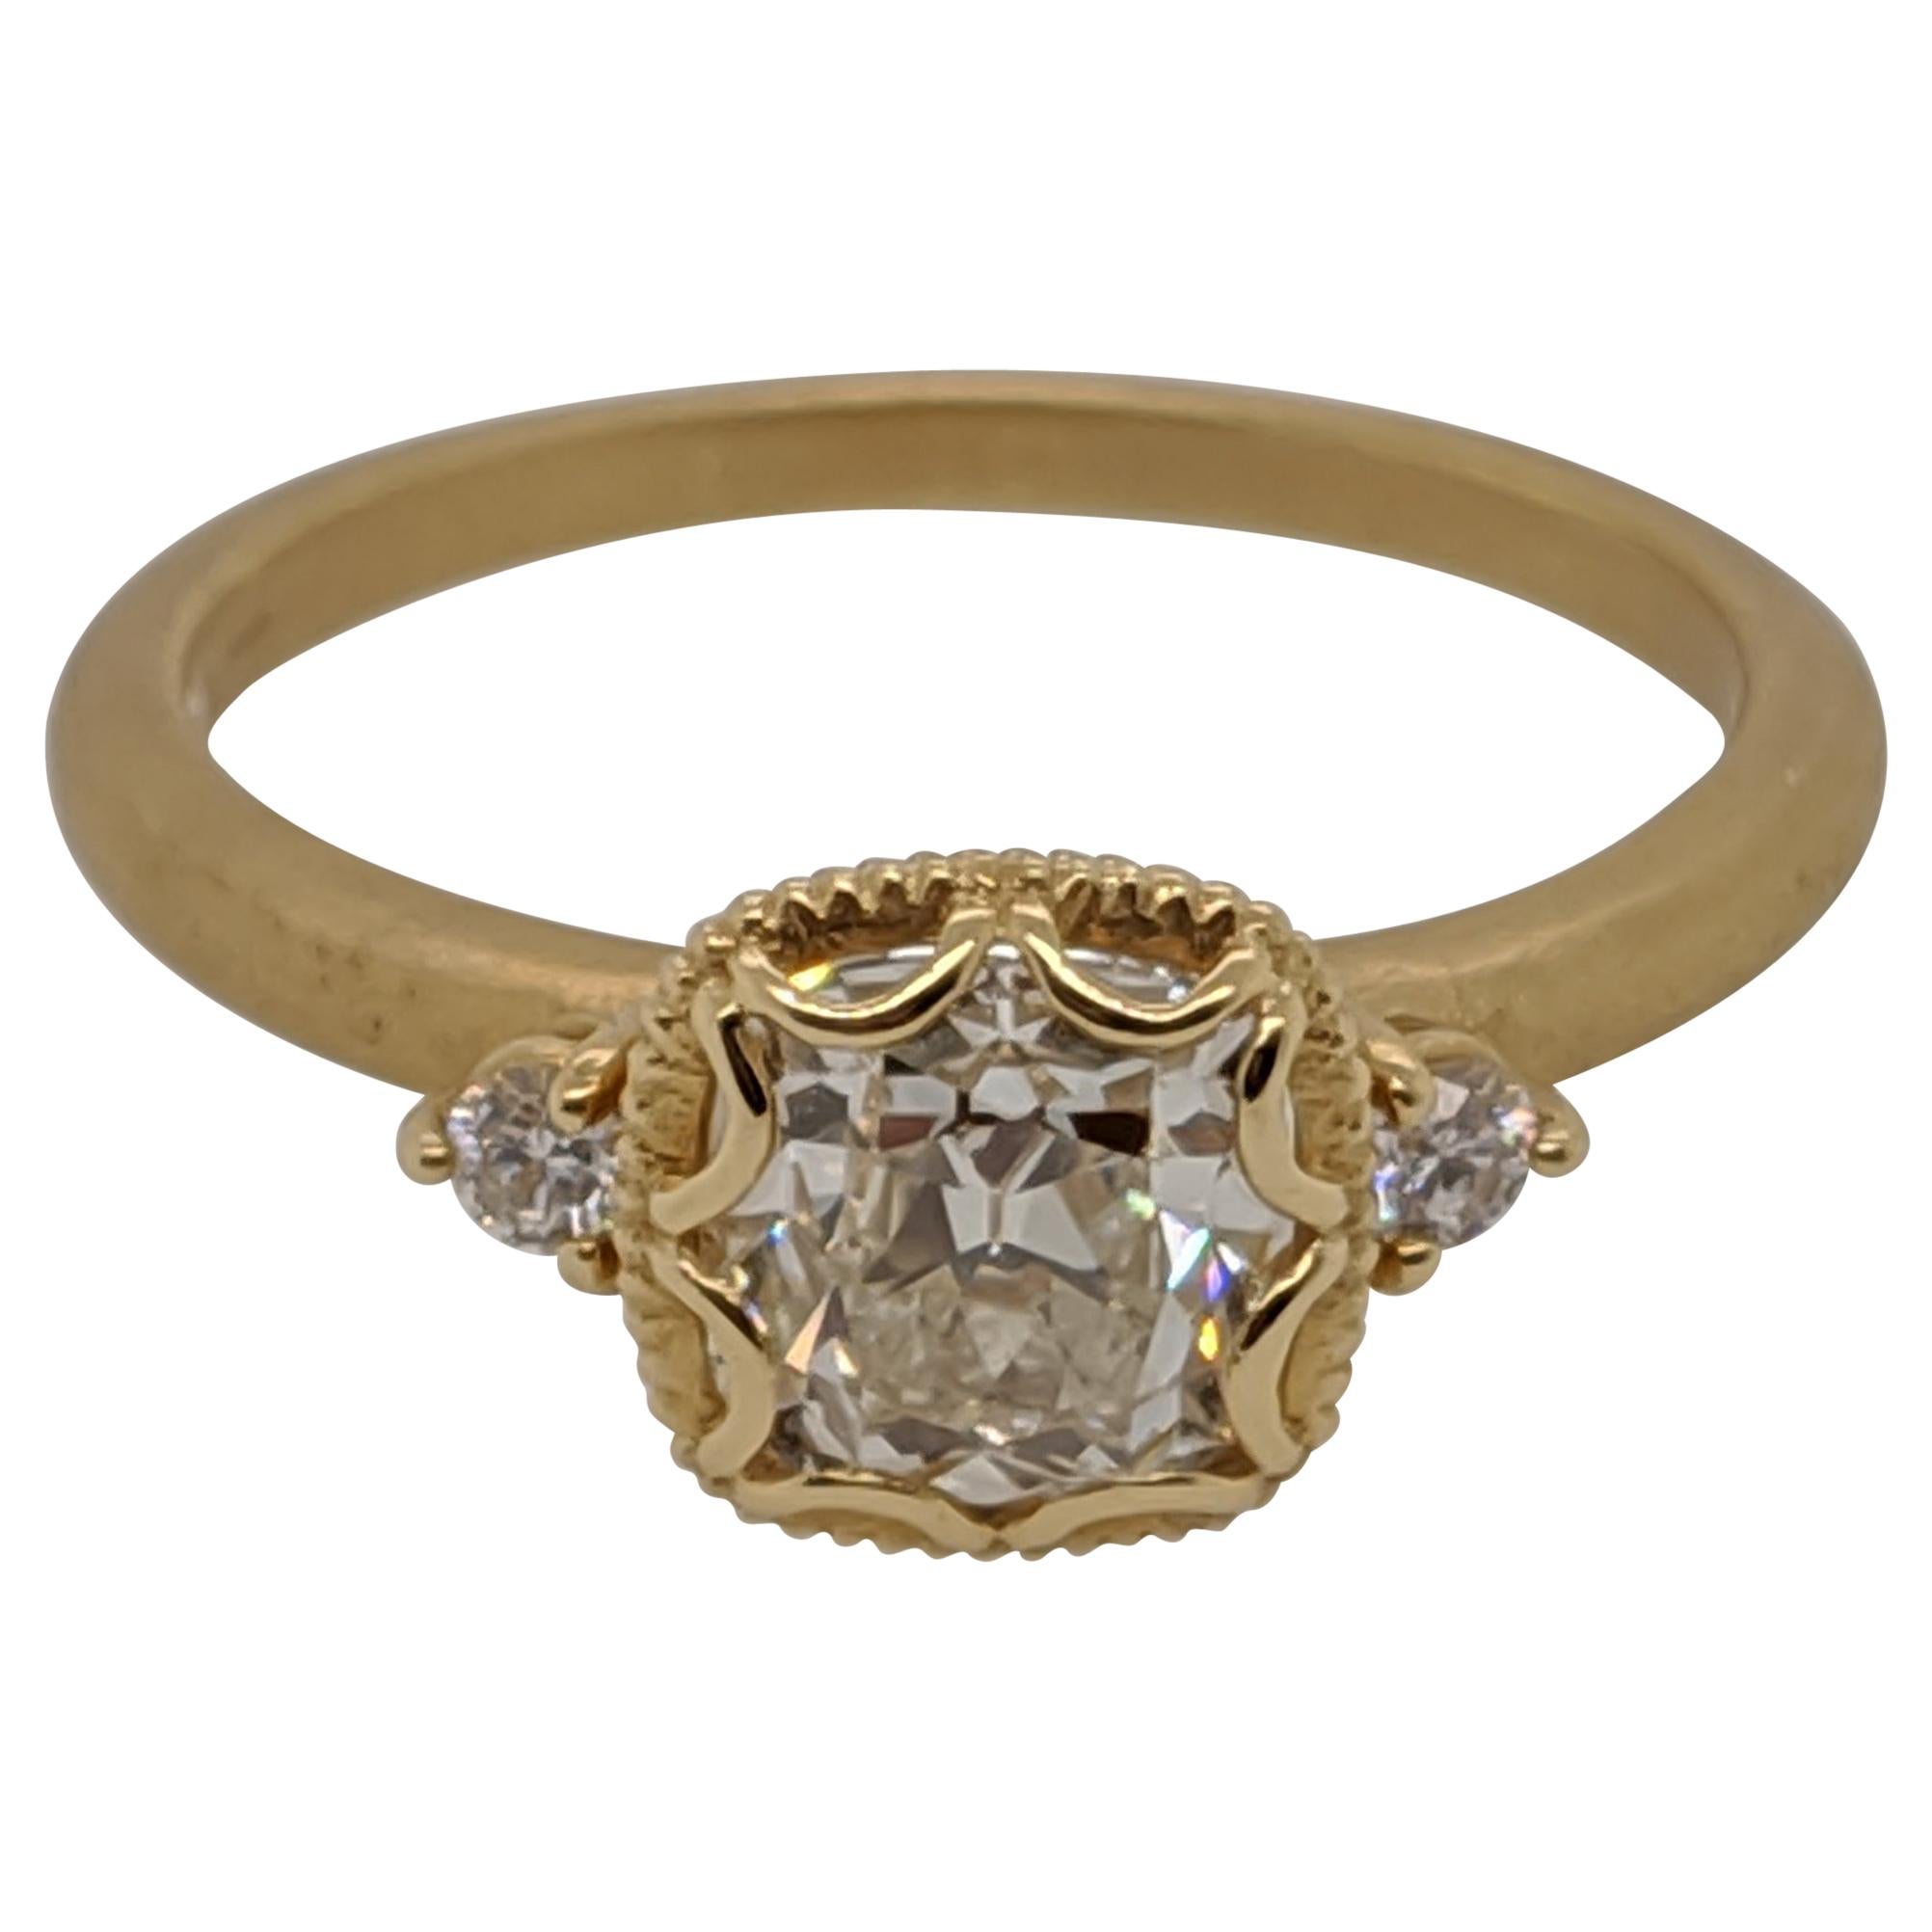 One Carat Antique Cut Cushion Diamond Ring in 18 Karat Yellow Gold, GIA